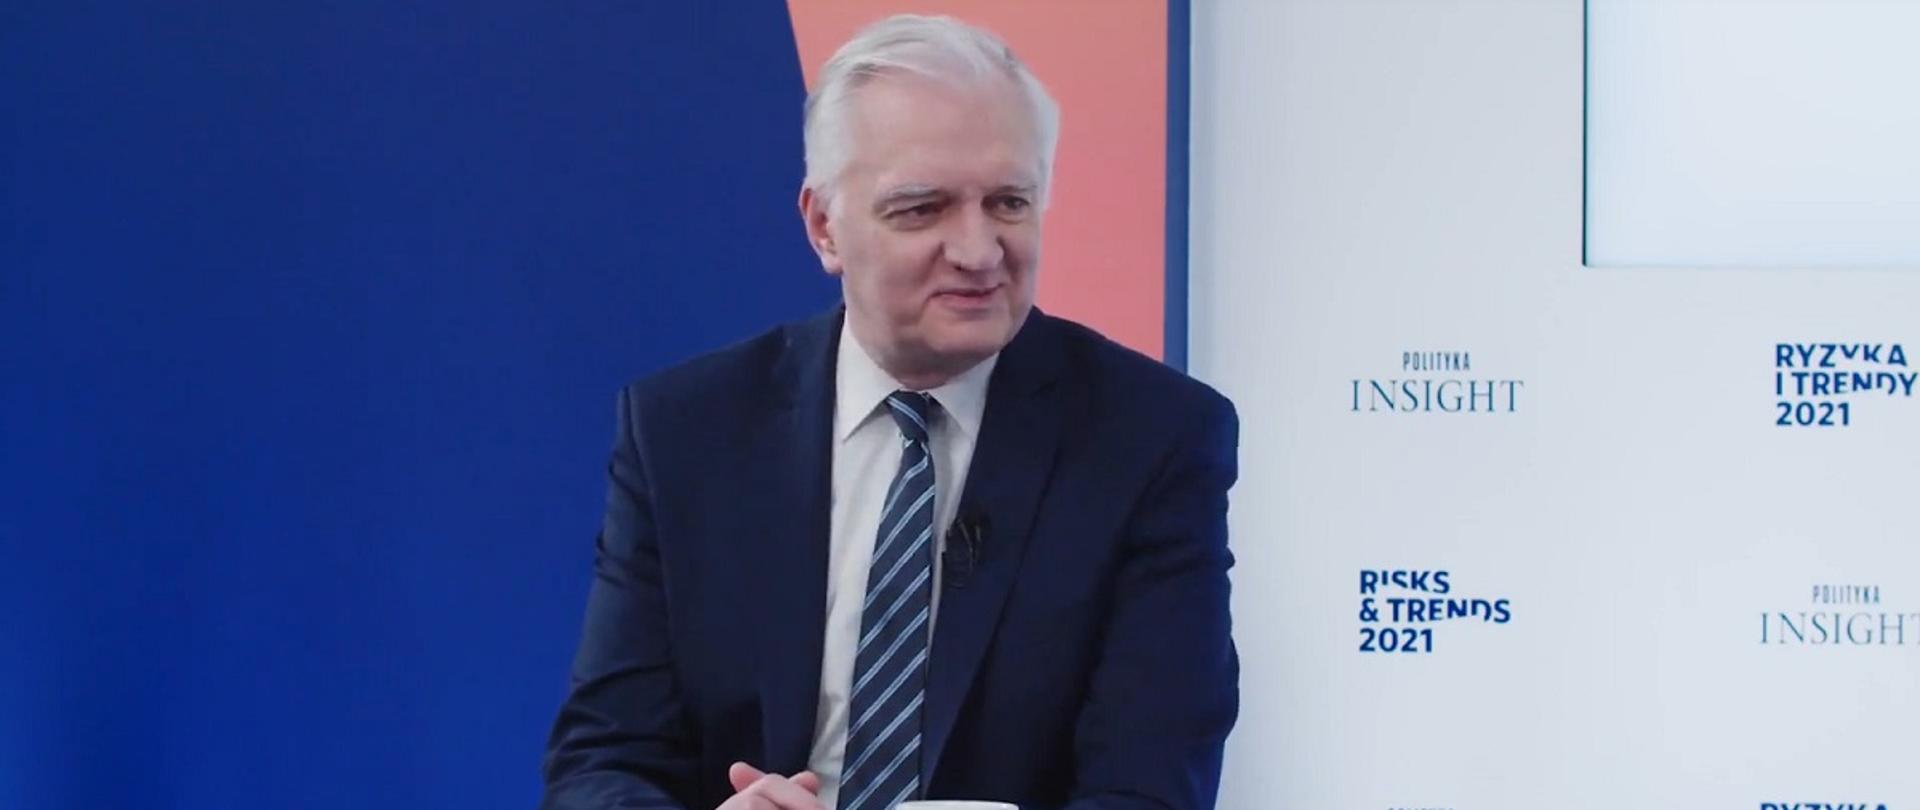 Wicepremier, minister rozwoju, pracy i technologii Jarosław Gowin siedzący przy stole, z tyły za jego plecami banner Polityka Insight